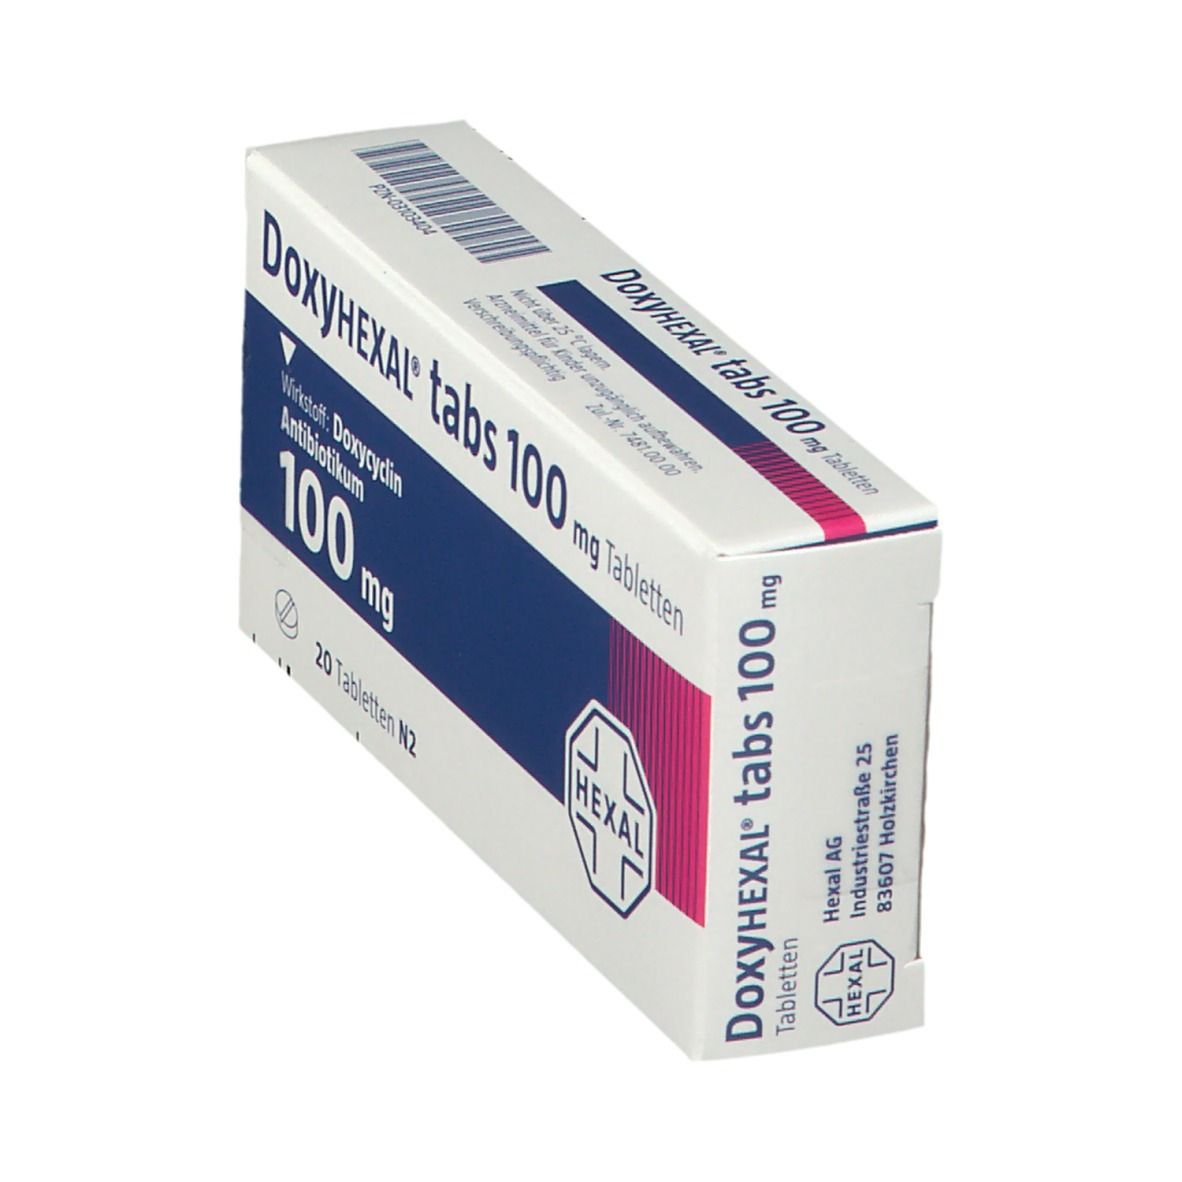 DoxyHEXAL® tabs 100 mg